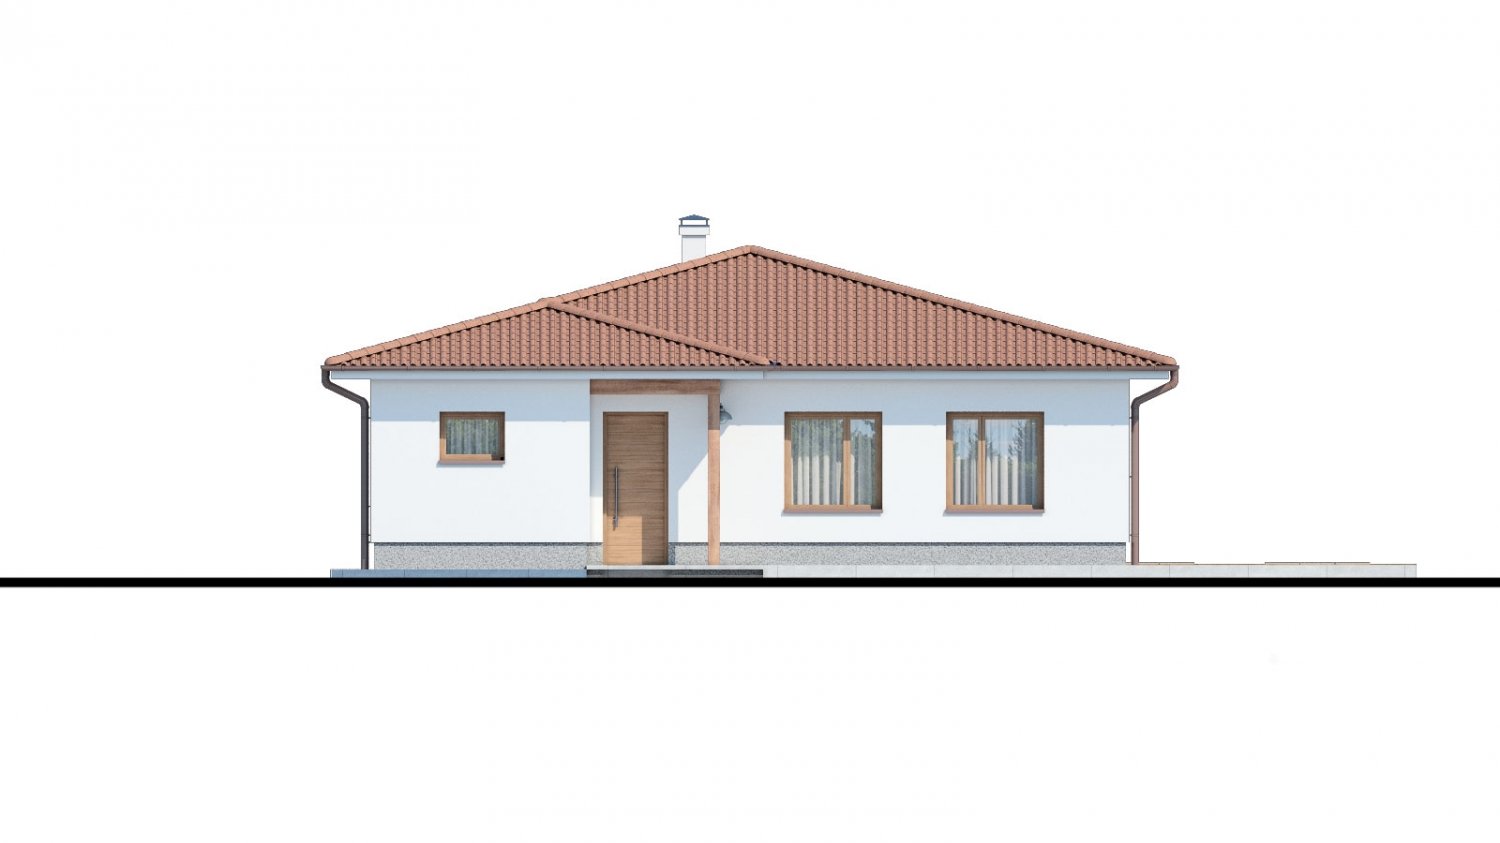 Pohľad 1. - Klasický bungalov s malým sklonem střechy.